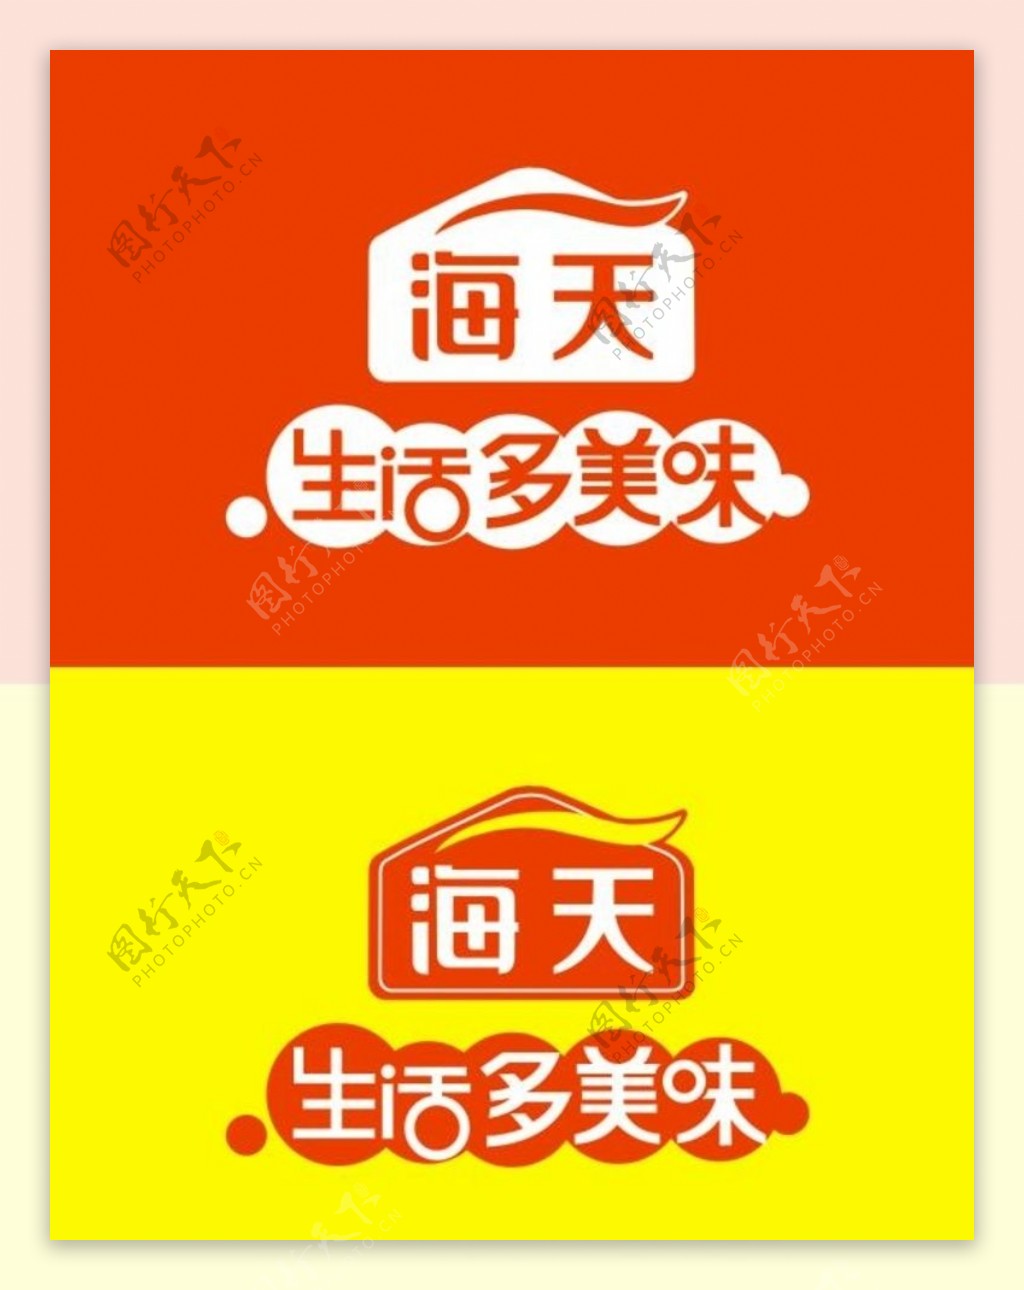 海天酱油logo海天酱油标